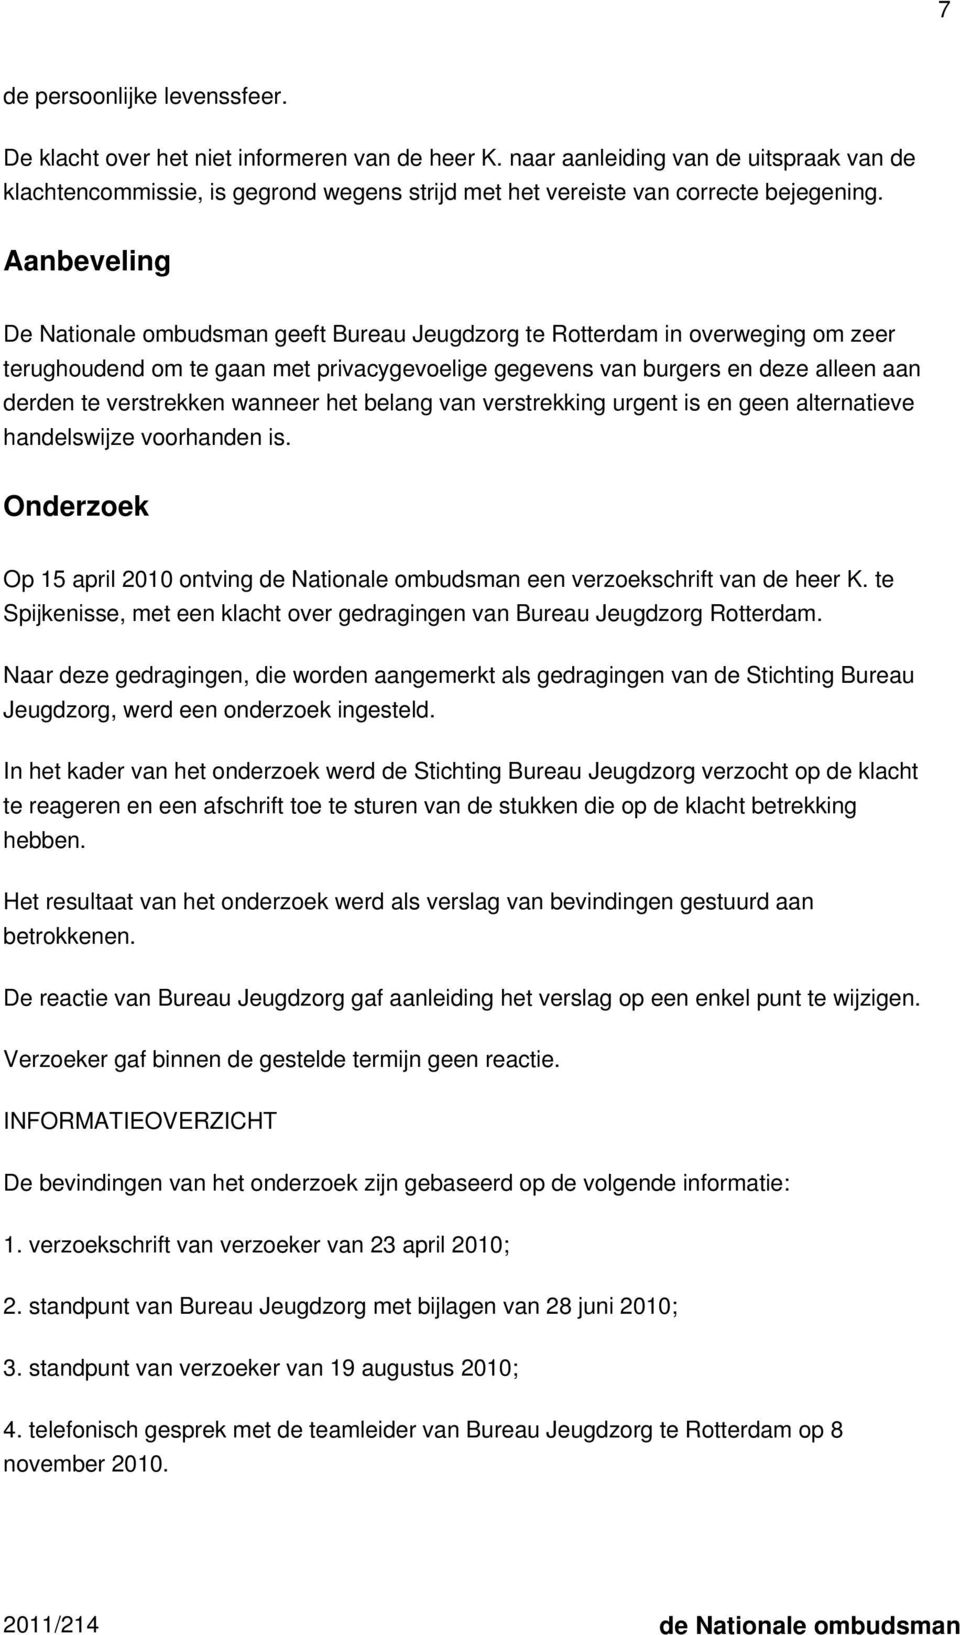 Aanbeveling De Nationale ombudsman geeft Bureau Jeugdzorg te Rotterdam in overweging om zeer terughoudend om te gaan met privacygevoelige gegevens van burgers en deze alleen aan derden te verstrekken